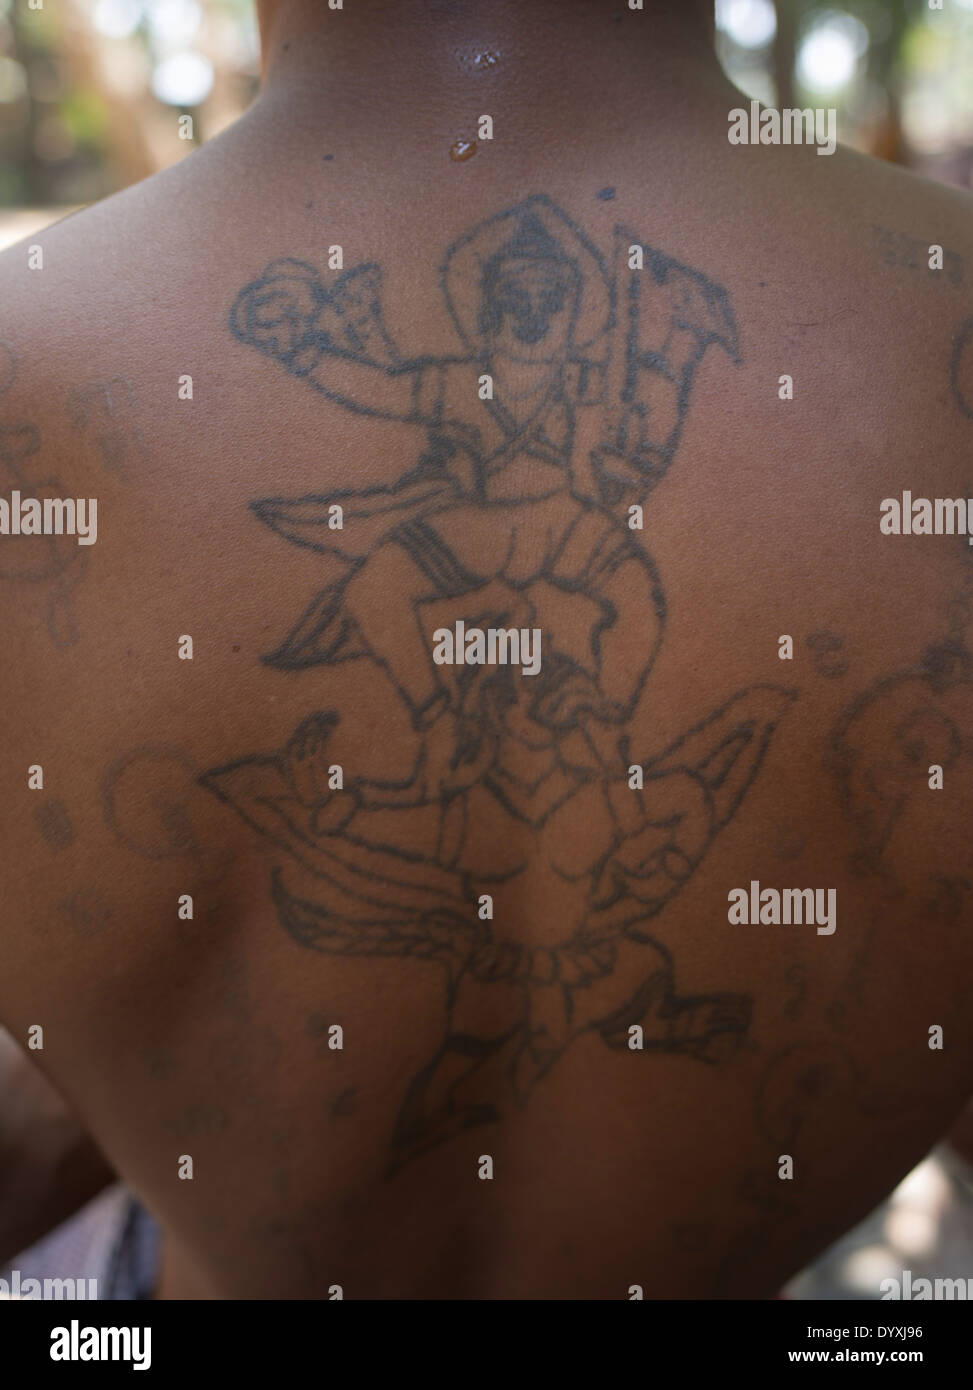 Moine avec tatouages bouddhiste Temple Lolei ( Du Roluos ) , Siem Reap, Cambodge Banque D'Images